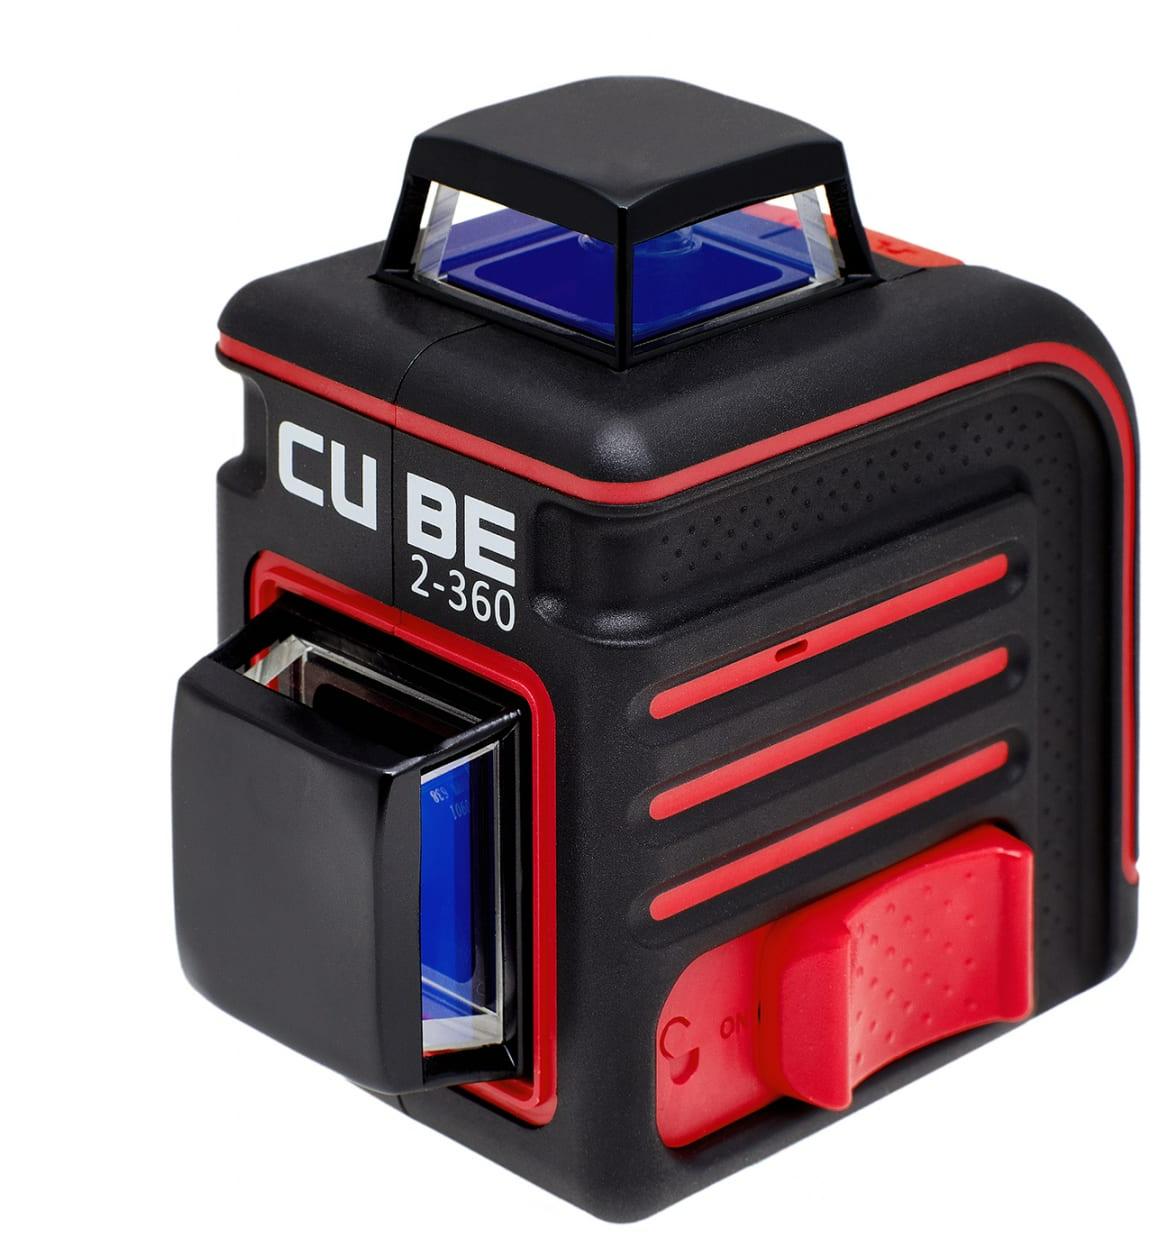 Cube 360 ultimate edition. Ada Cube 3-360 Ultimate Edition. Лазерный нивелир ada. Лазерный уровень Cube 360. Кейс для ada Cube.